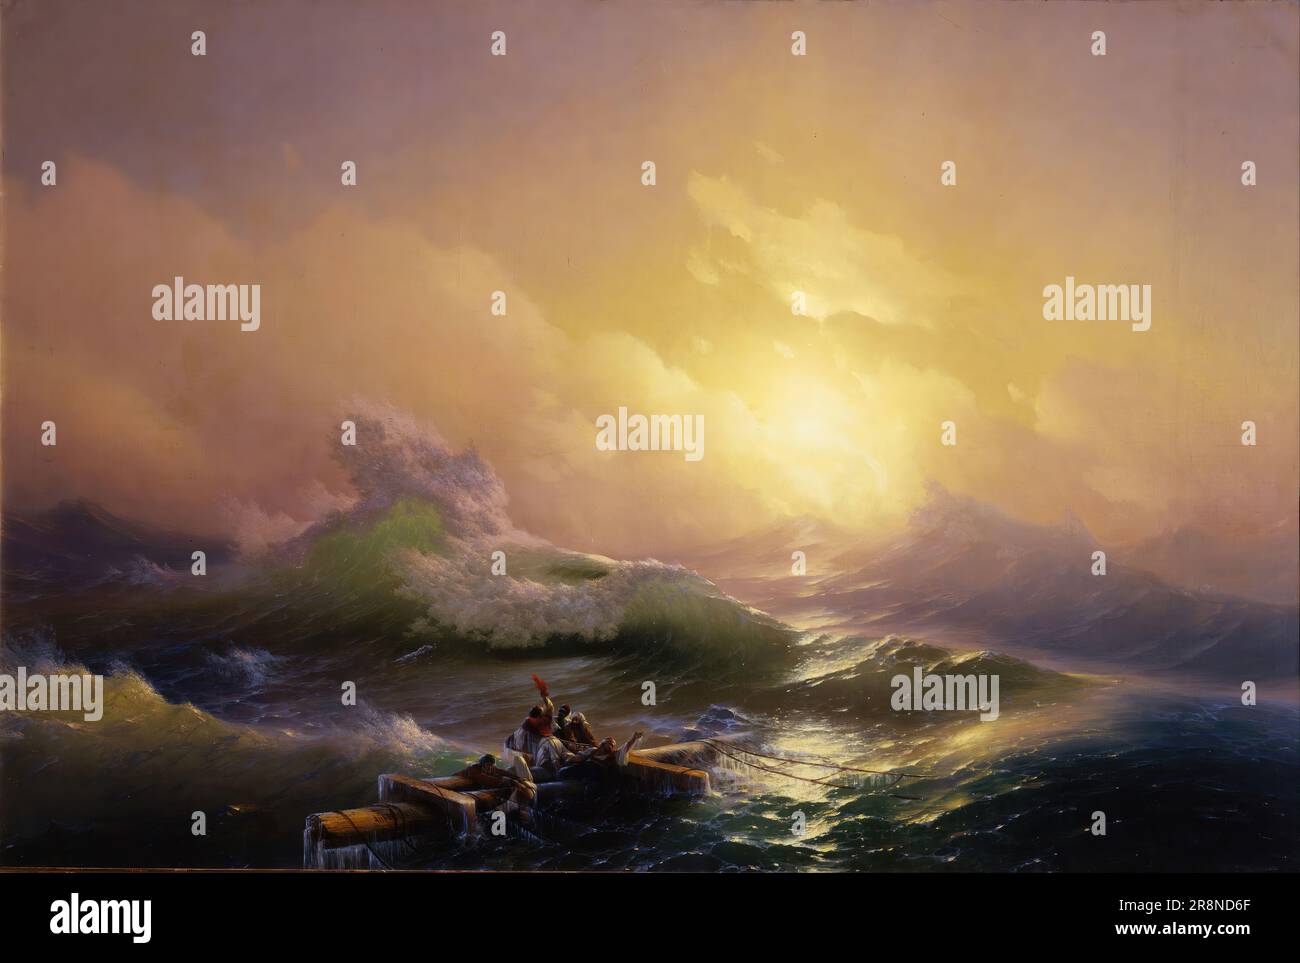 La neuvième vague par Ivan Aivazovsky, 1850, huile sur toile, 221×332 cm, Musée russe d'État, Saint-Pétersbourg. Banque D'Images